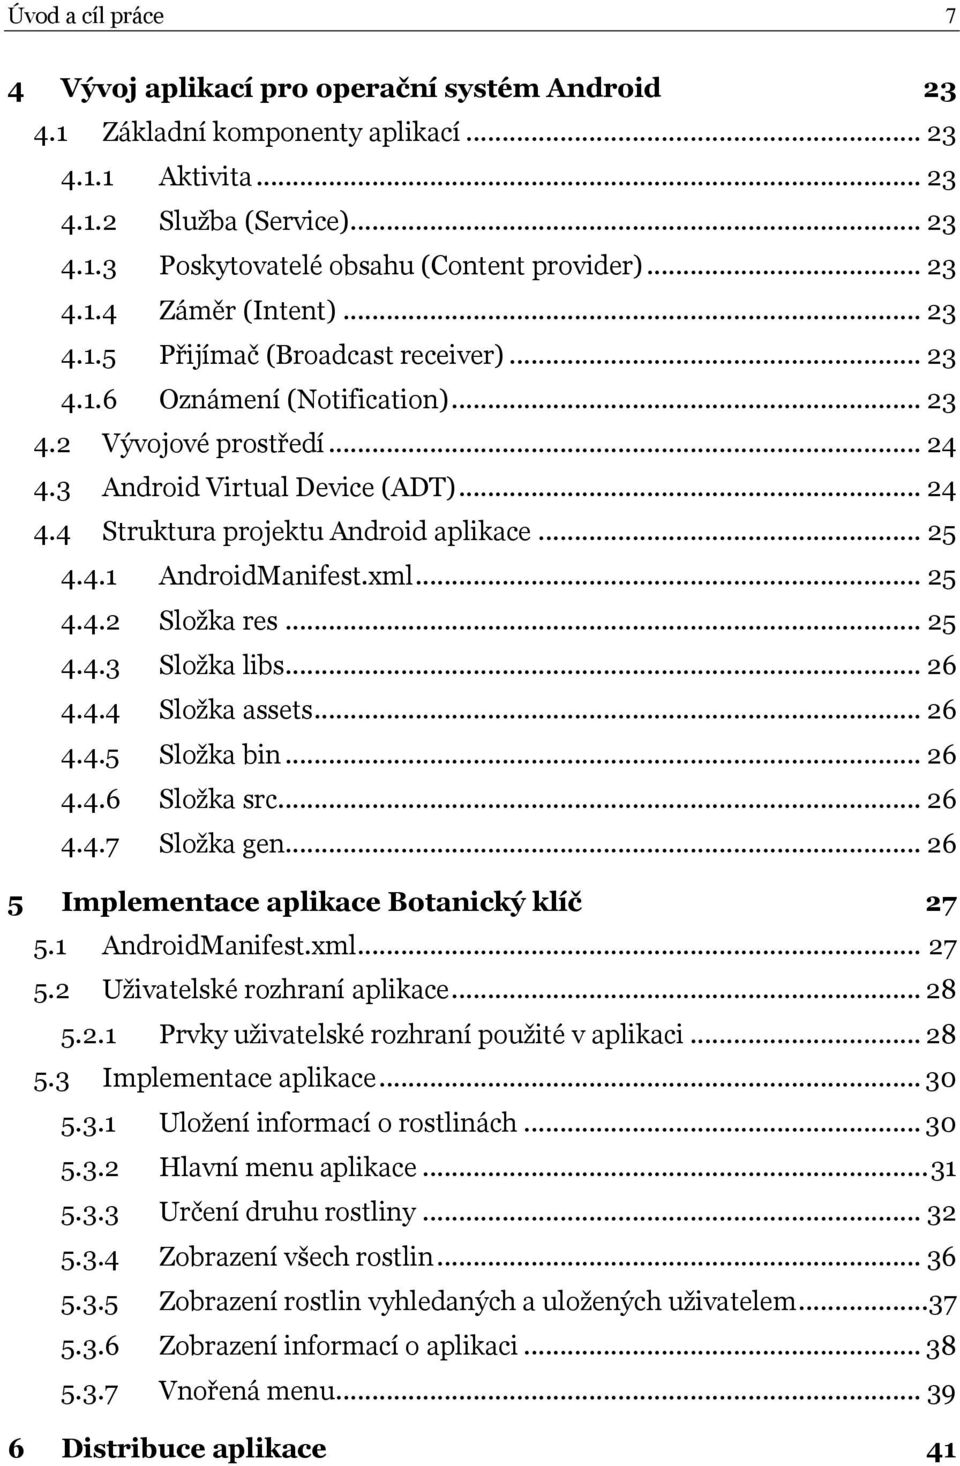 Mobilní aplikace Botanický klíč - PDF Stažení zdarma